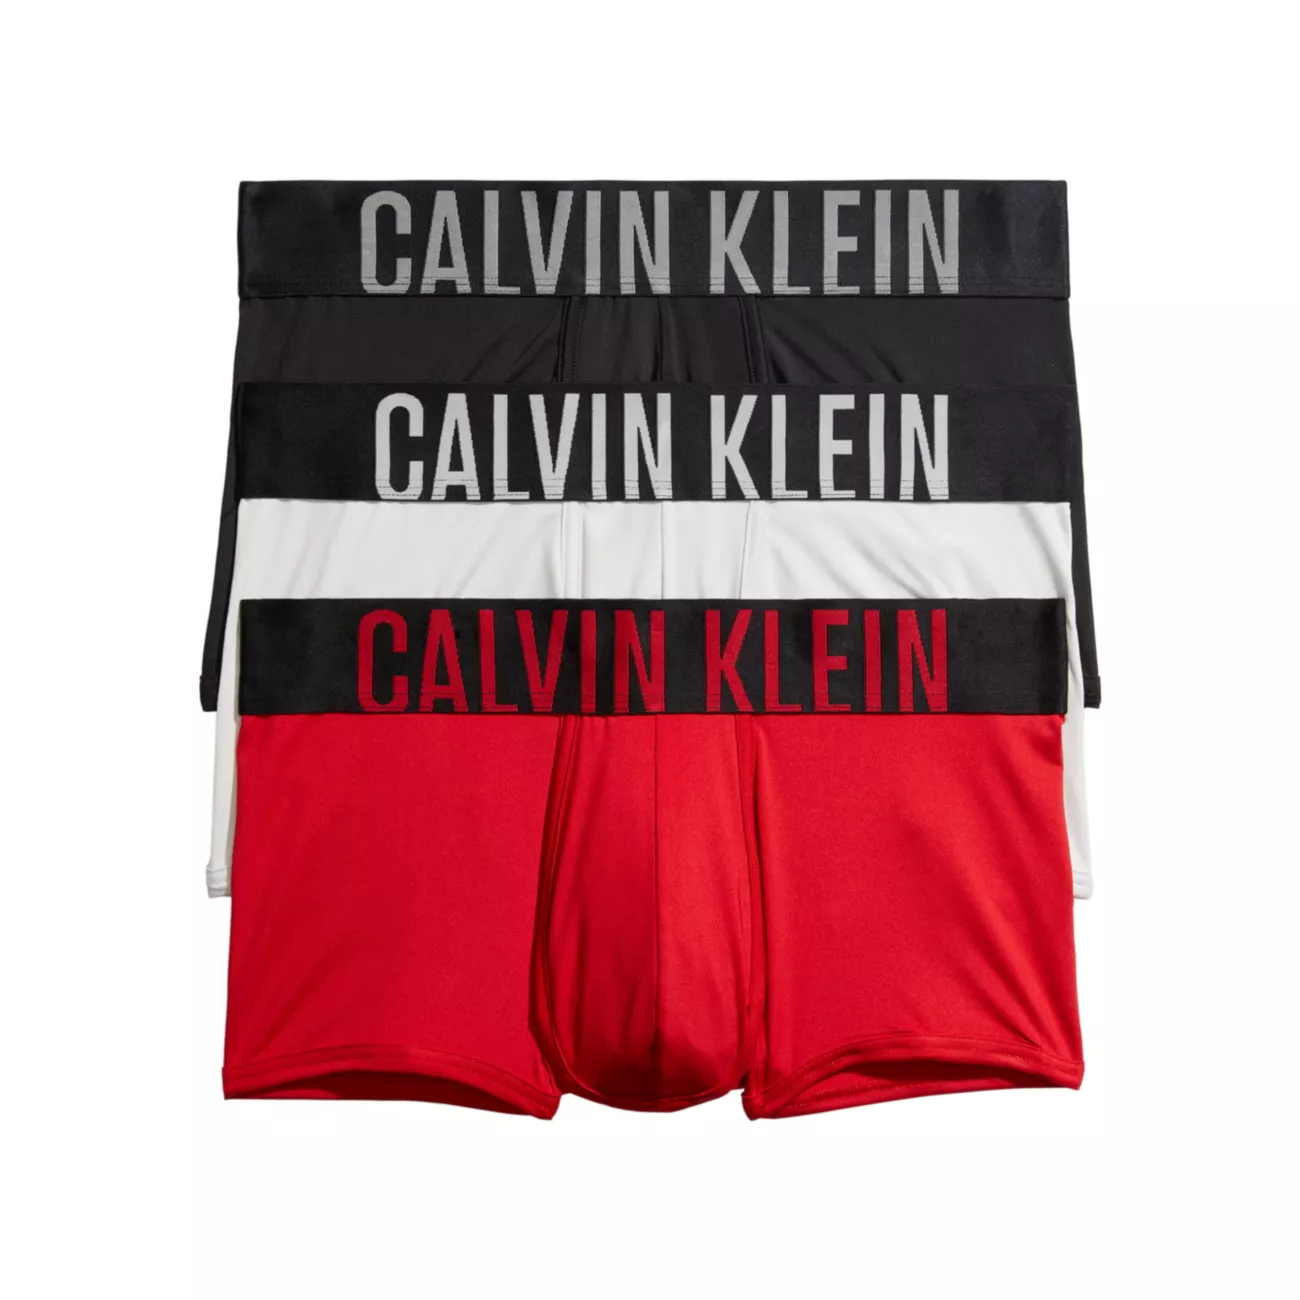 3 пары плавок с низкой посадкой с логотипом Calvin Klein